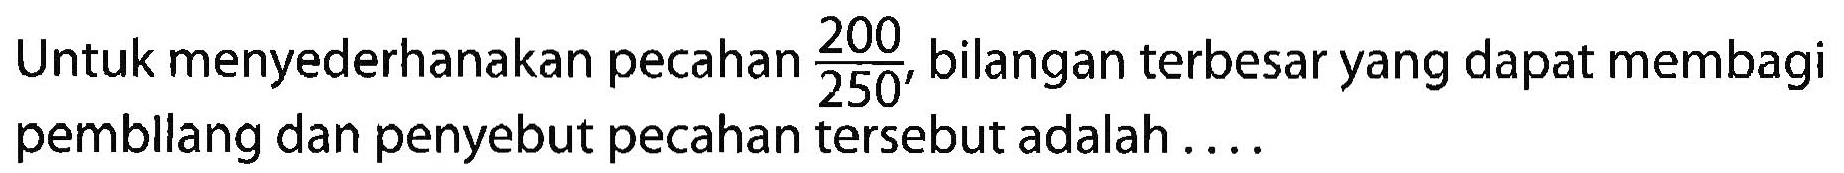 Untuk menyederhanakan pecahan 200/250, bilangan terbesar yang dapat membagi pembllang dan penyebut pecahan tersebut adalah....